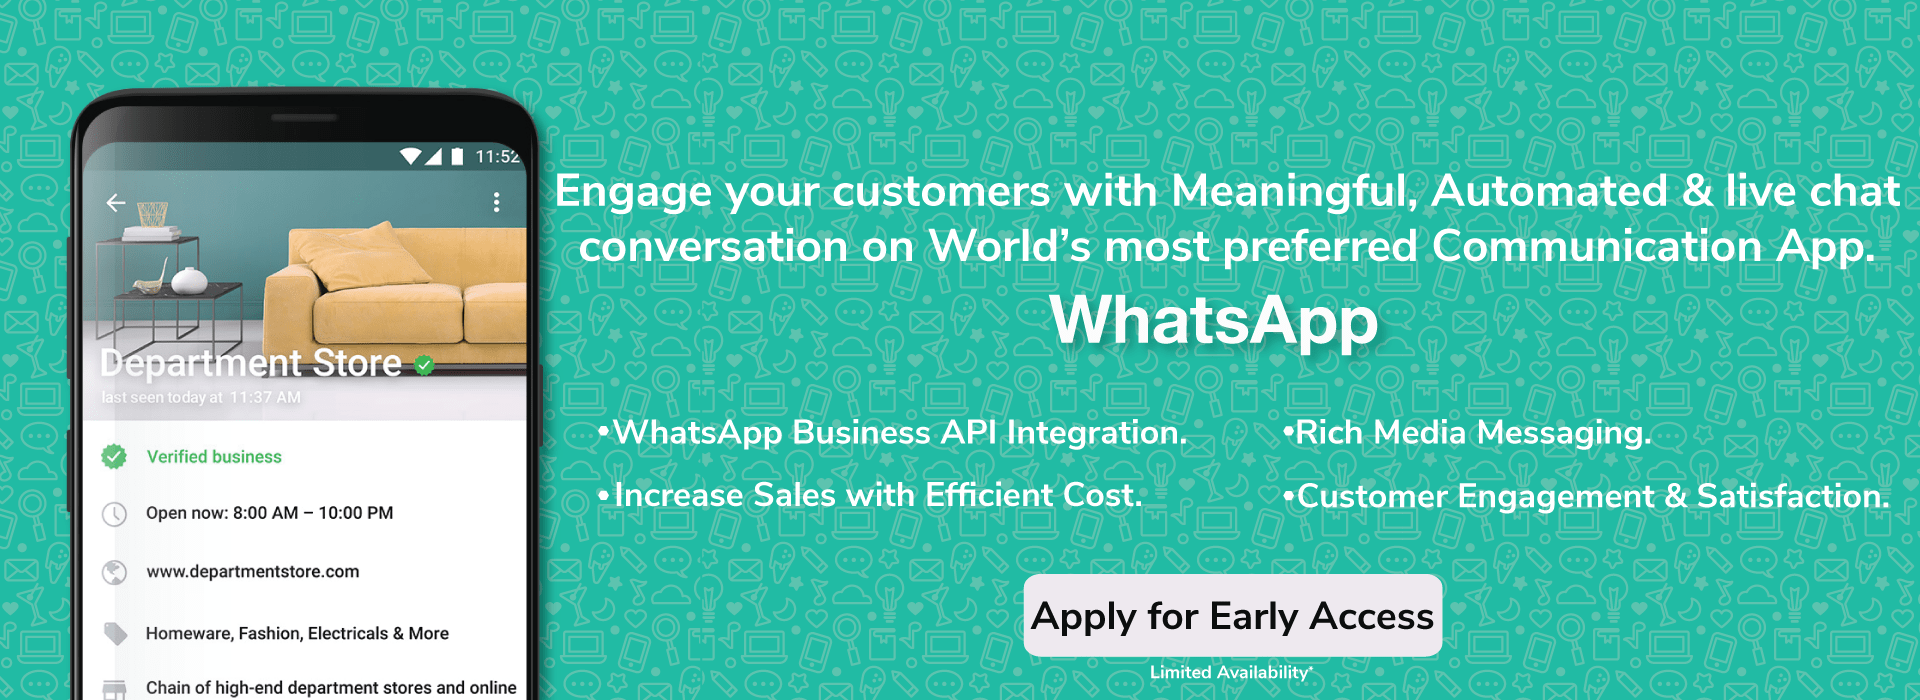 Whatsapp Marketing Services banner